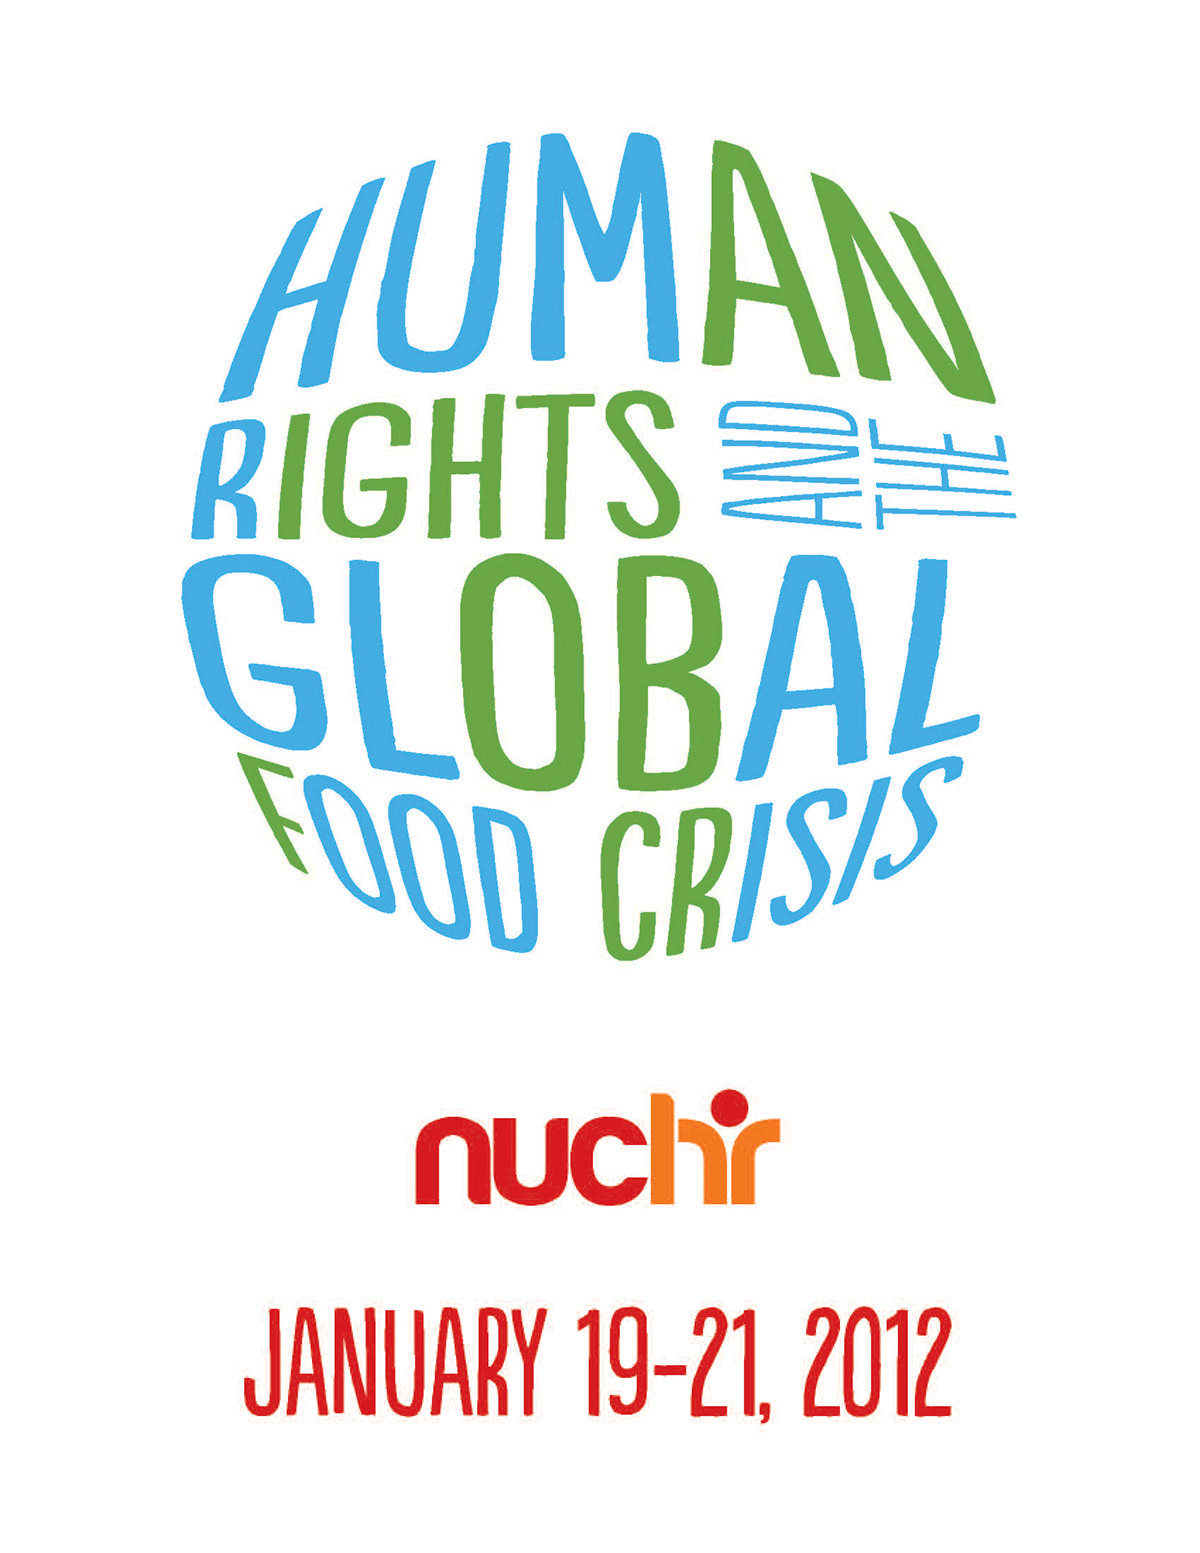 northwestern university NUCHR Human rights